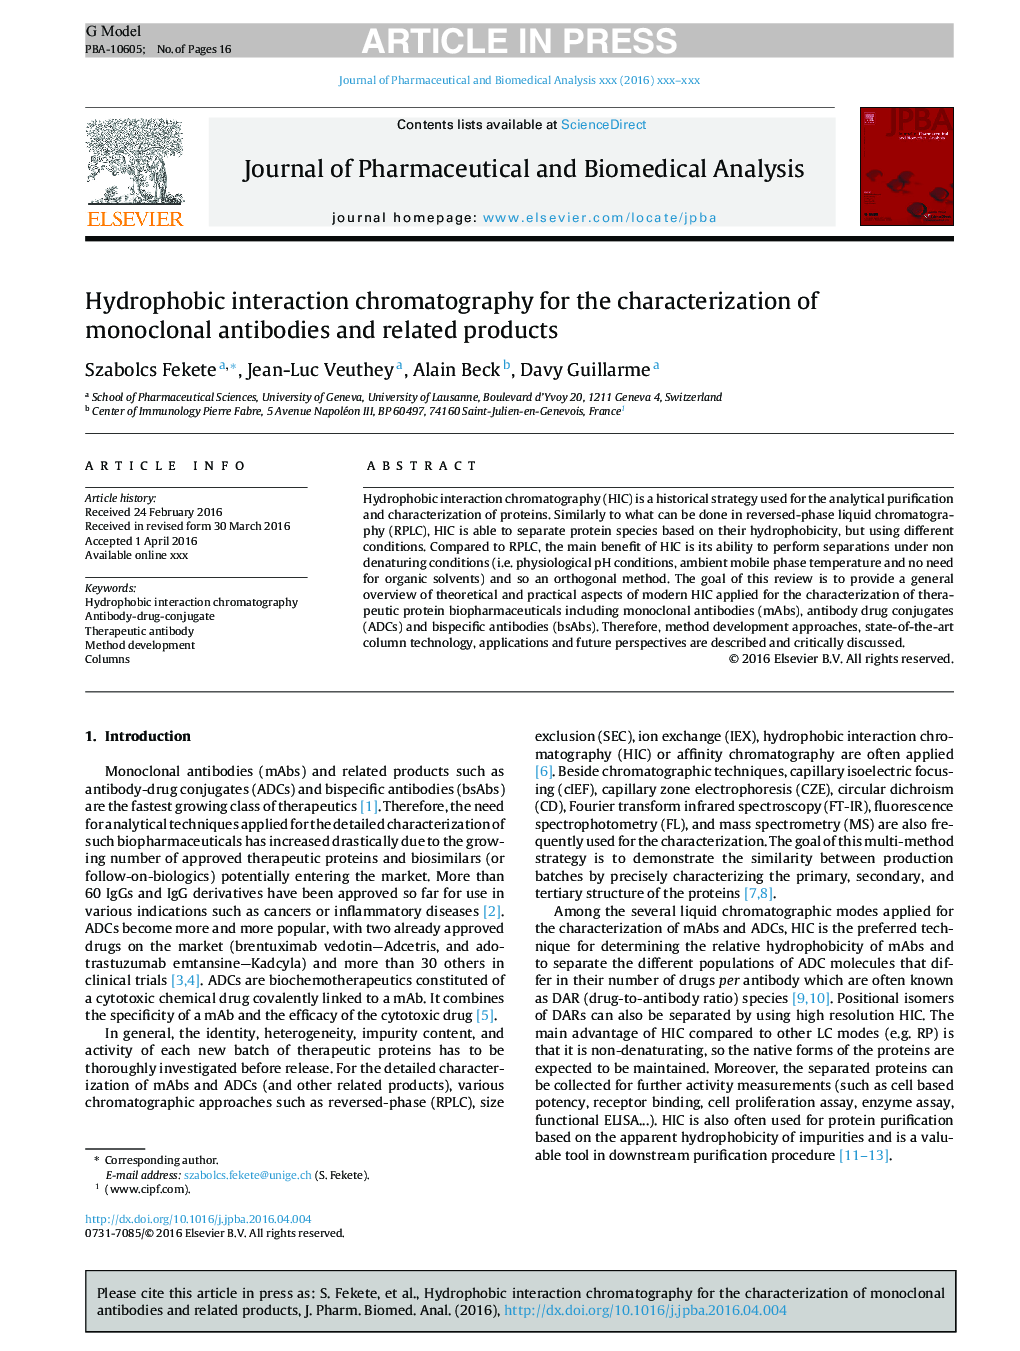 کروماتوگرافی متقابل هیدروفیبی برای توصیف آنتی بادیهای منوکلونال و محصولات مرتبط 